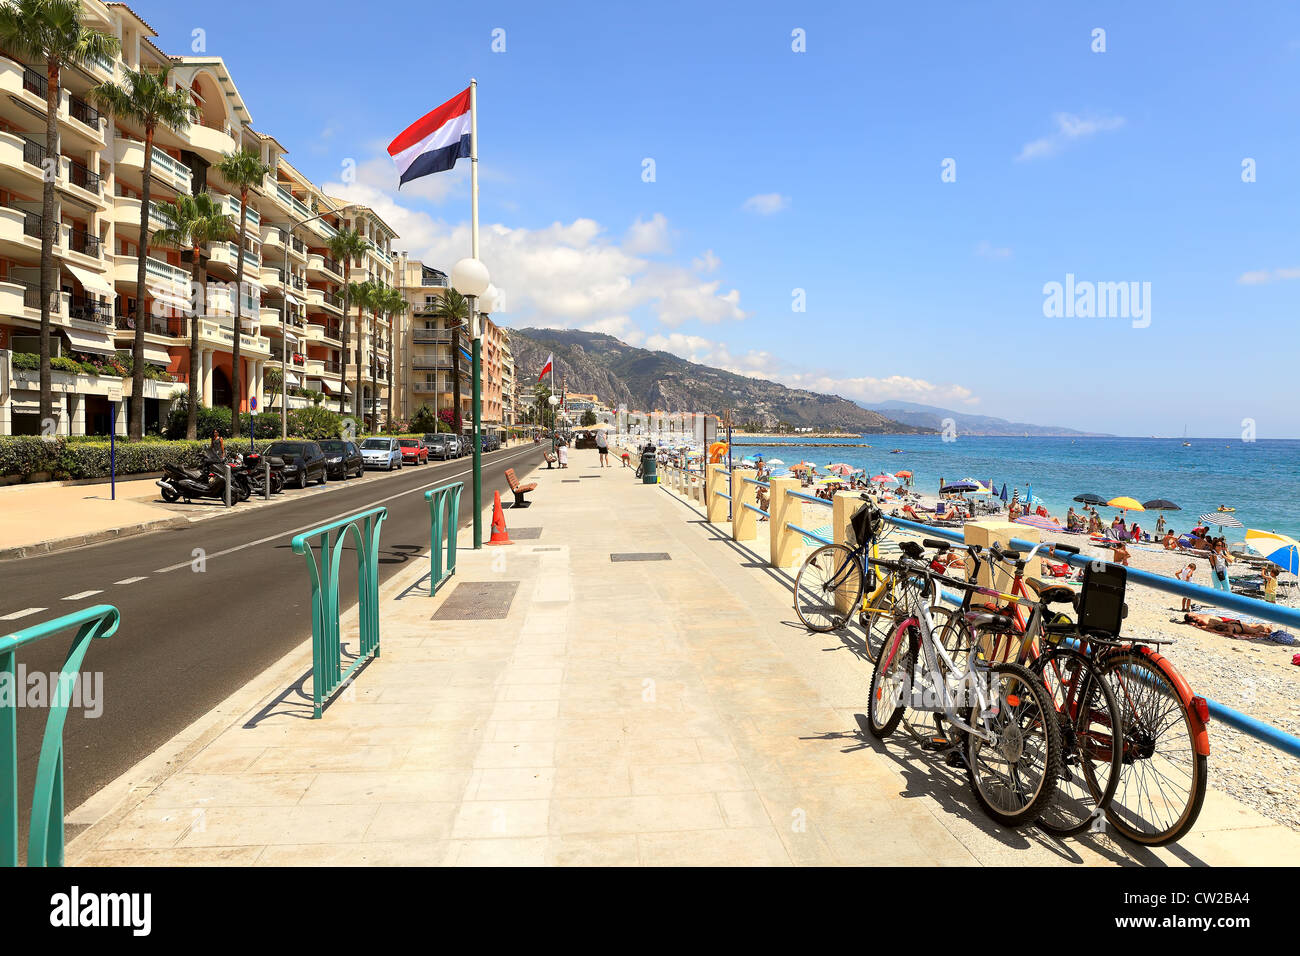 Die Promenade entlang der Küste und Hotels in Menton (auch bekannt als die Perle von Frankreich) - der Stadtzentrums Côte d ' Azur. Stockfoto